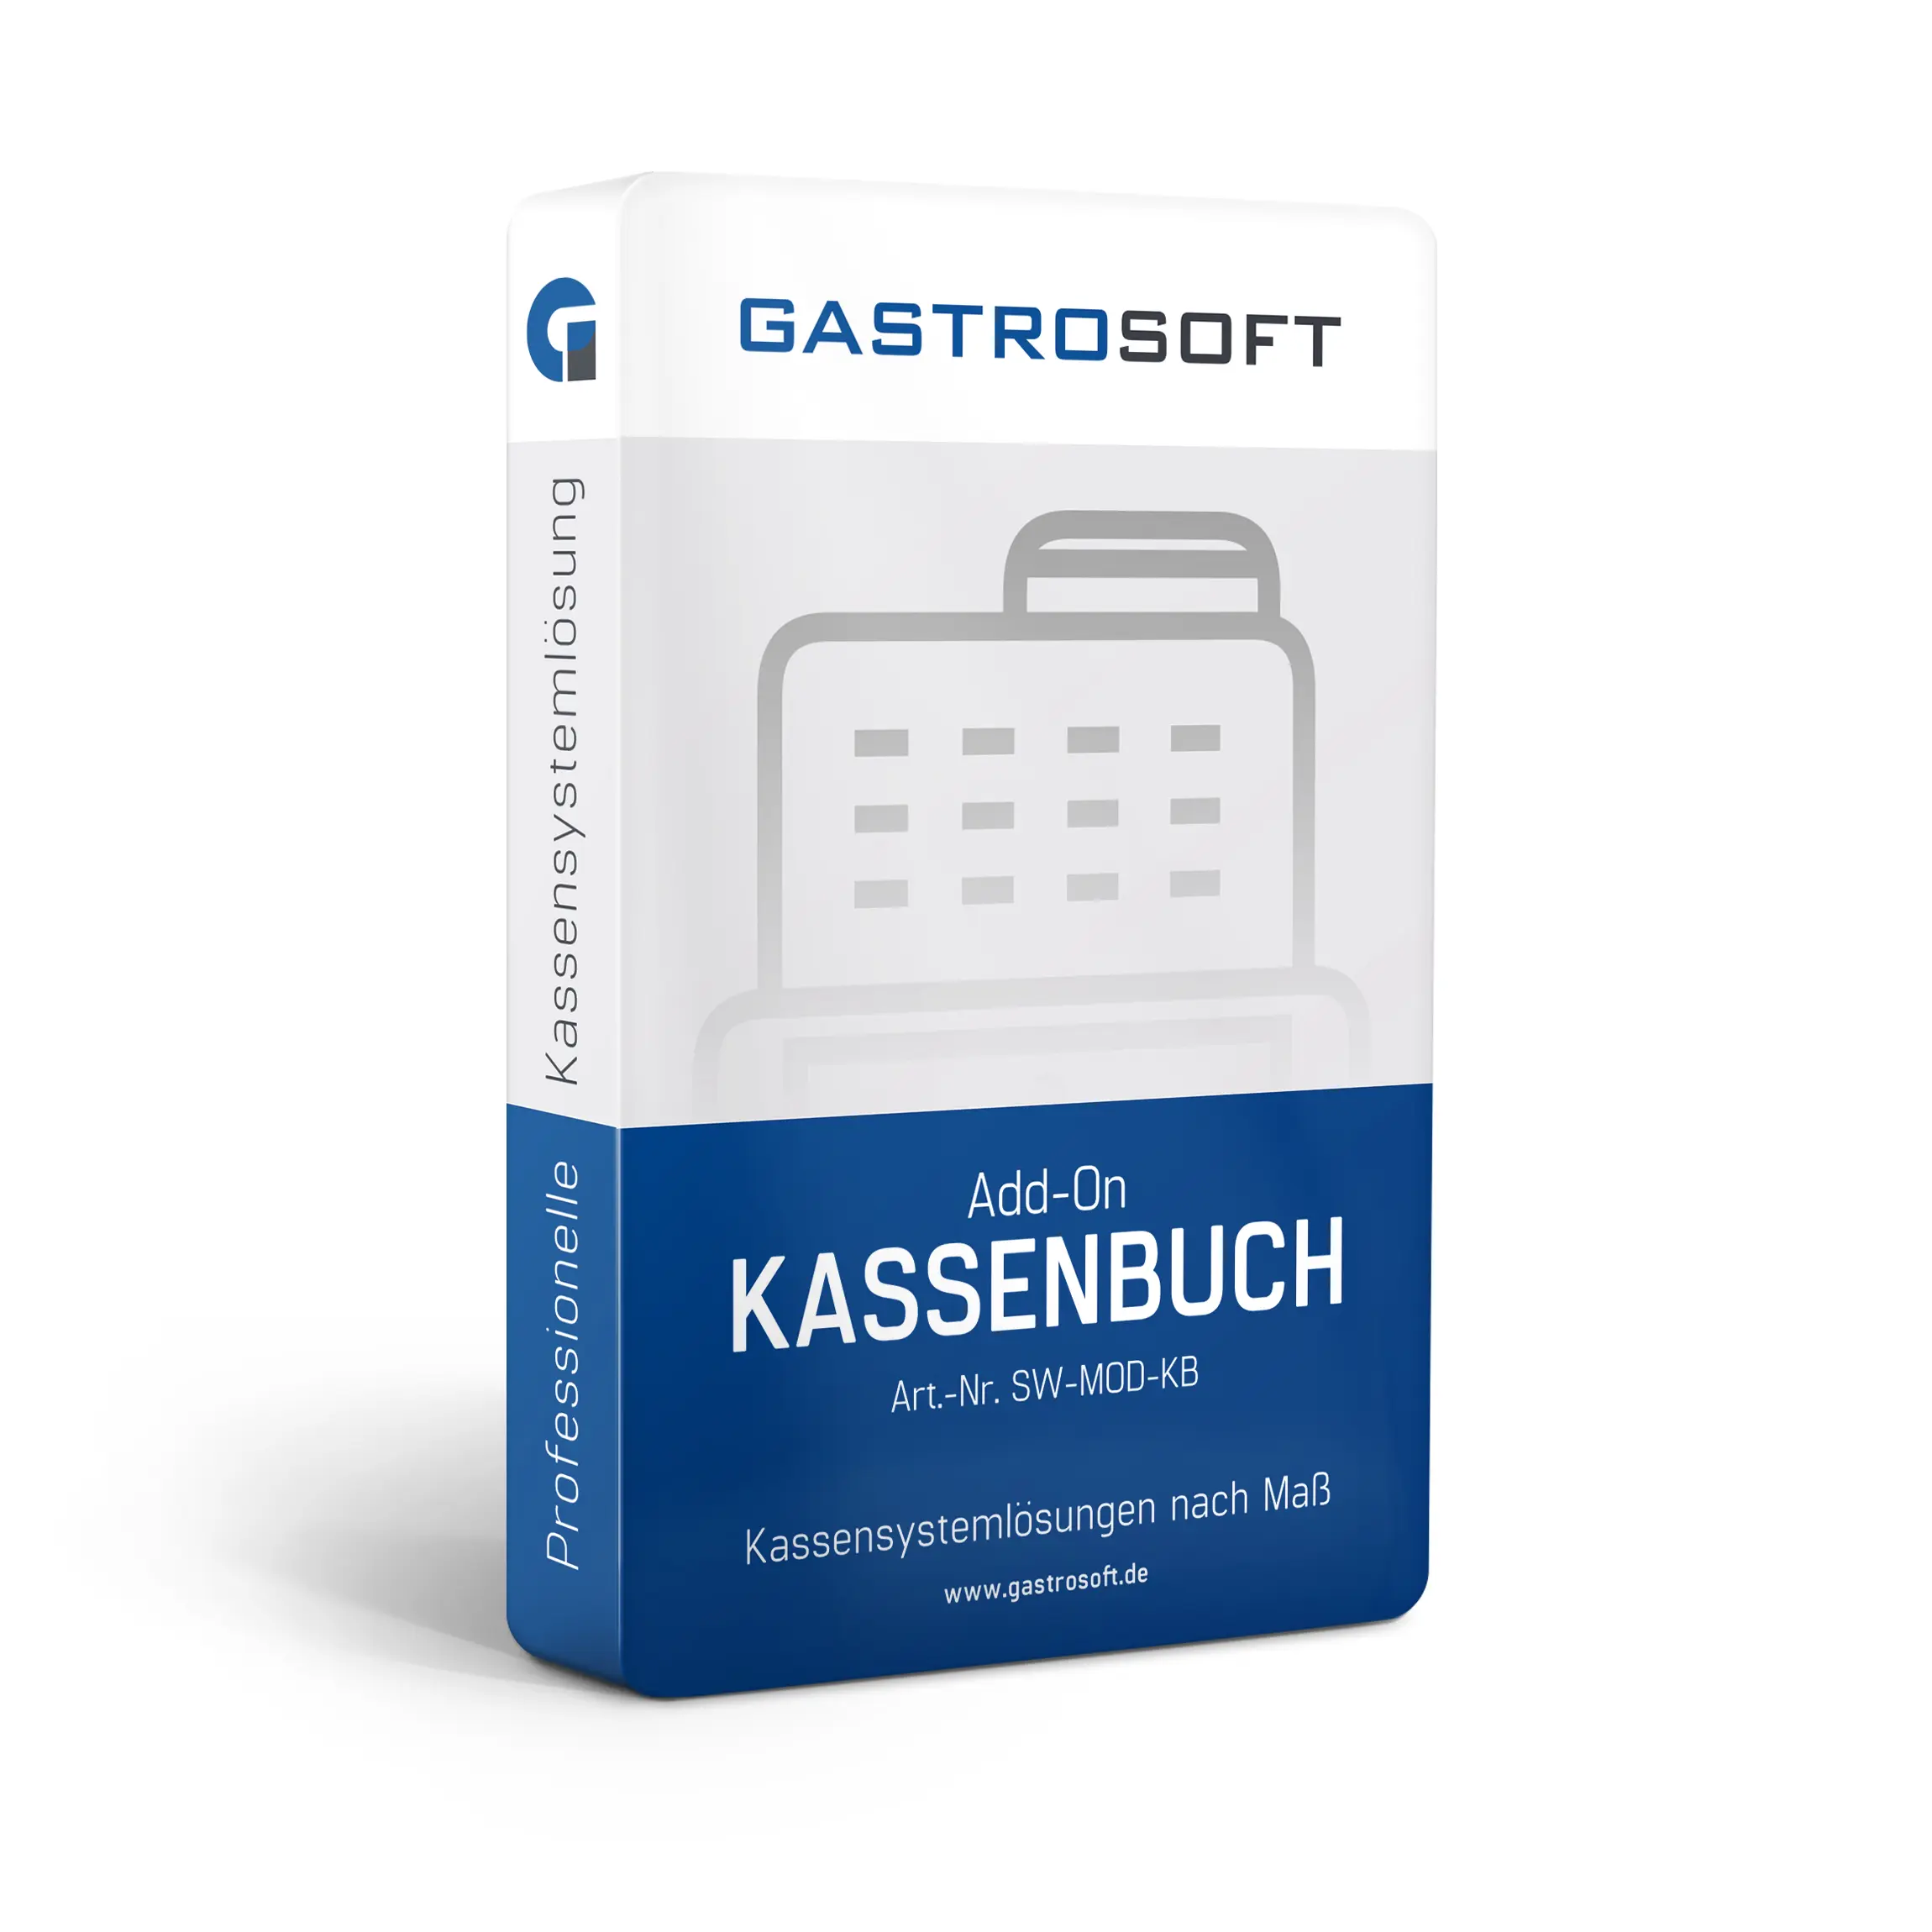 Verpackung einer professionellen Kassensoftwarelösung, Kassensystemlösung, Zusatzmodul - Add-On Kassenbuch